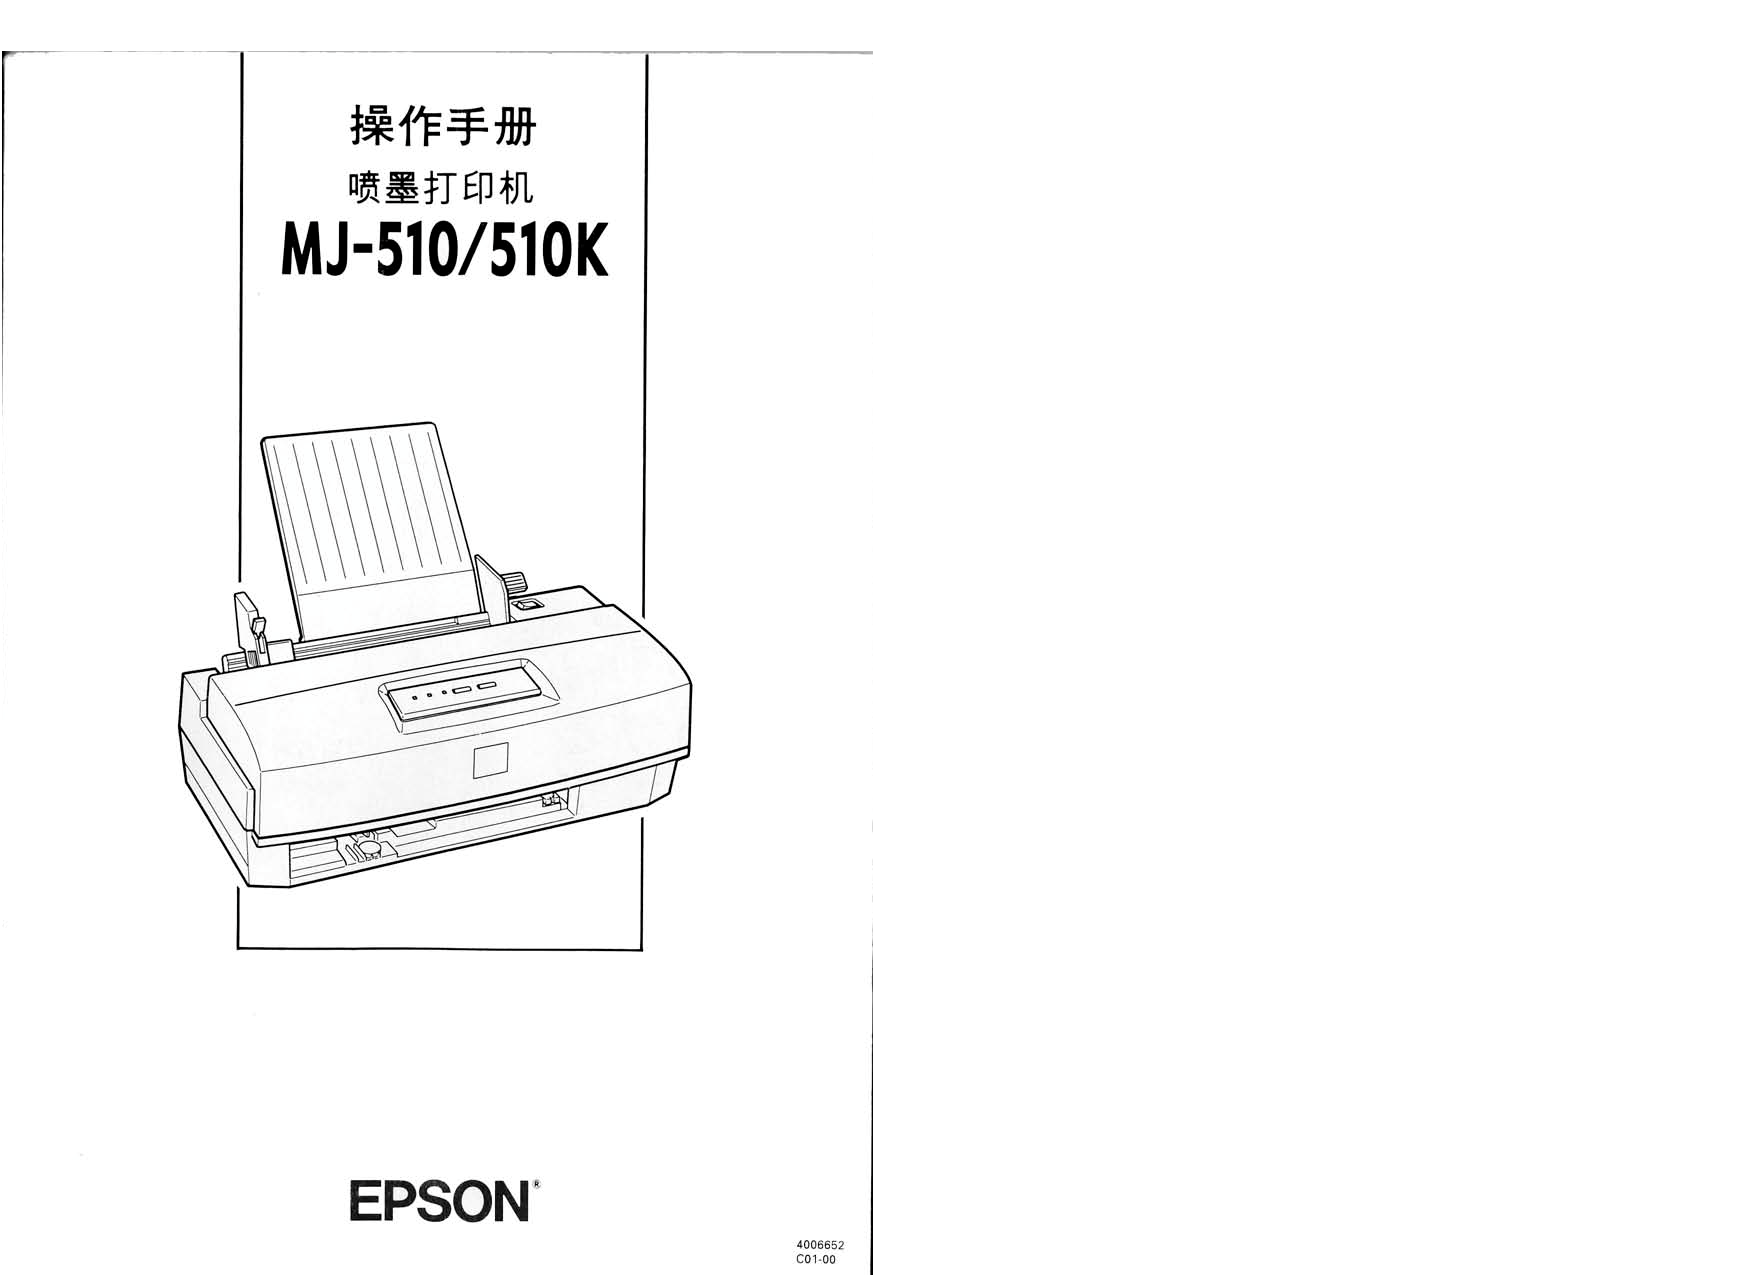 爱普生 Epson MJ-510 操作手册 封面